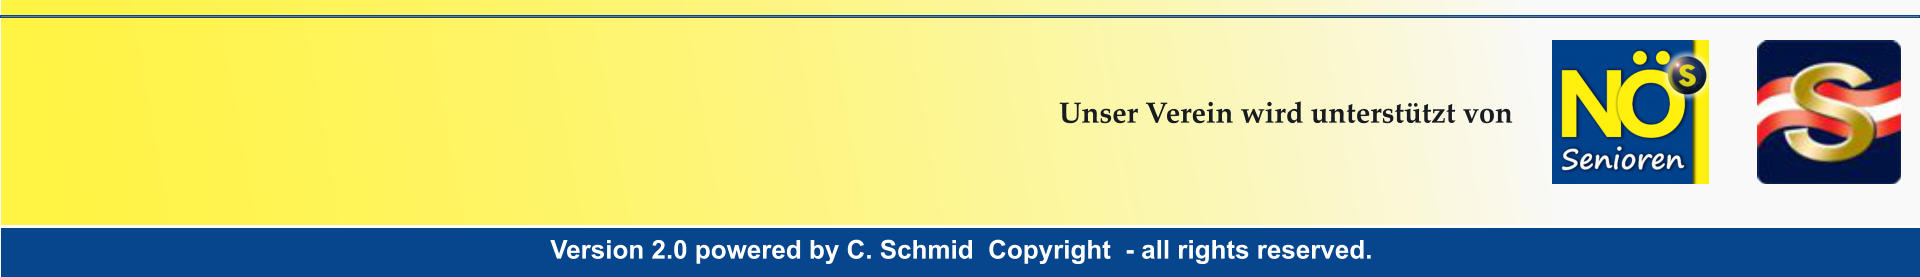 Version 2.0 powered by C. Schmid  Copyright  - all rights reserved. Version 2.0 powered by C. Schmid  Copyright  - all rights reserved. Unser Verein wird untersttzt von